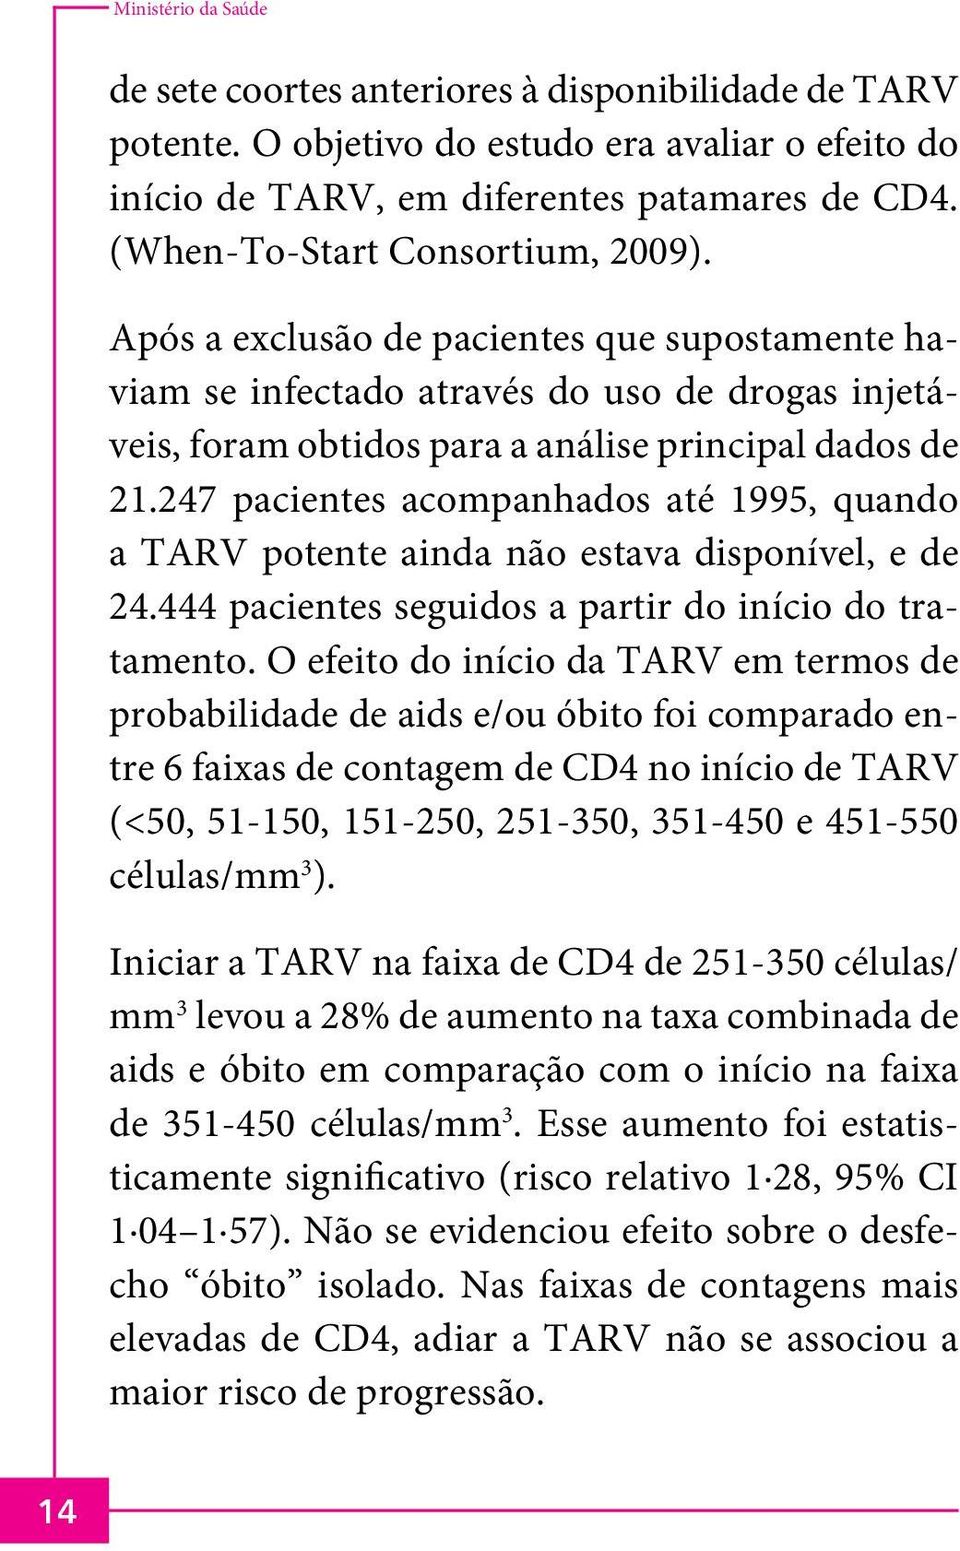 247 pacientes acompanhados até 1995, quando a TARV potente ainda não estava disponível, e de 24.444 pacientes seguidos a partir do início do tratamento.